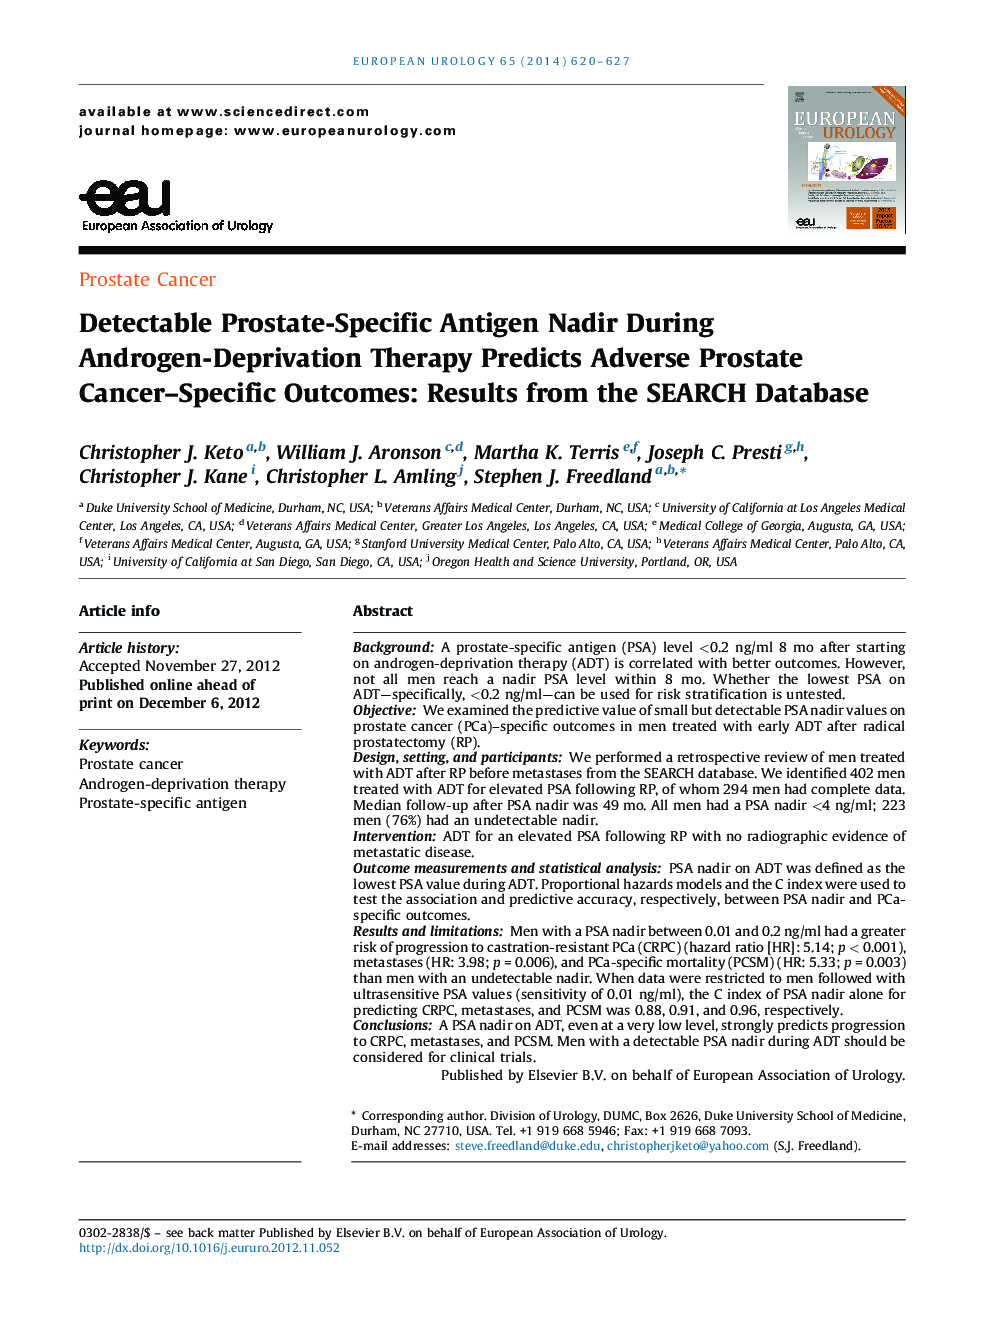 تشخیص پروتئین اختصاصی آنتیژن نادیر در طول درمان با آندروژن درمان پیش بینی نشده پیامدهای خاص سرطان پروستات: نتایج از پایگاه داده جستجو 